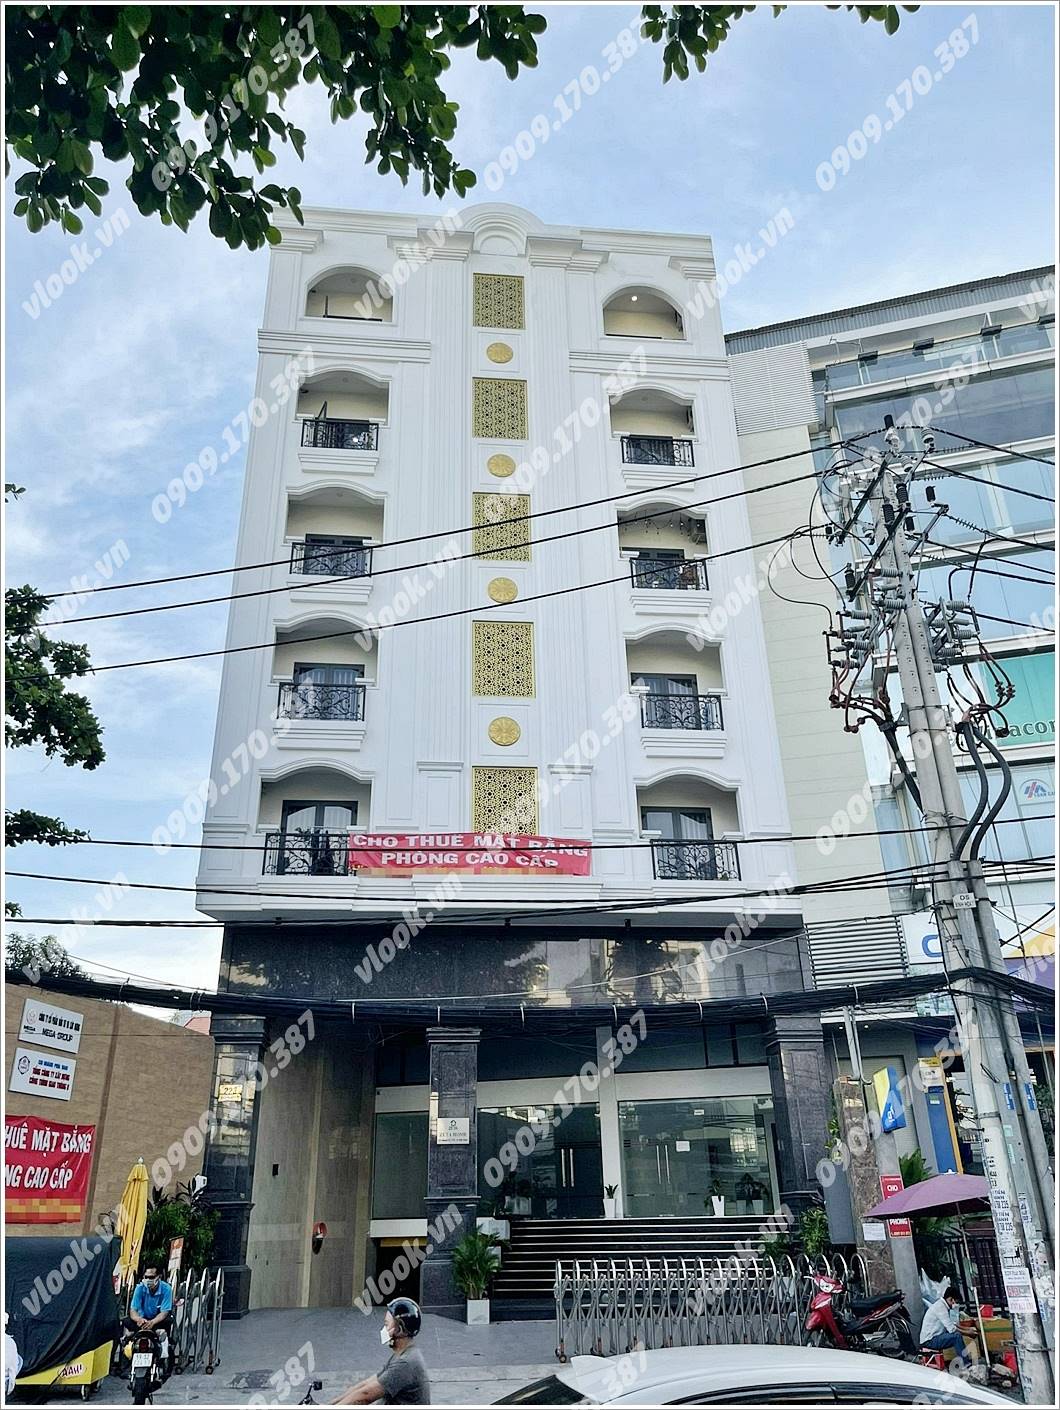 Cao ốc văn phòng cho thuê Tòa nhà 223 Nguyễn Xí, Quận Bình Thạnh, TPHCM - vlook.vn